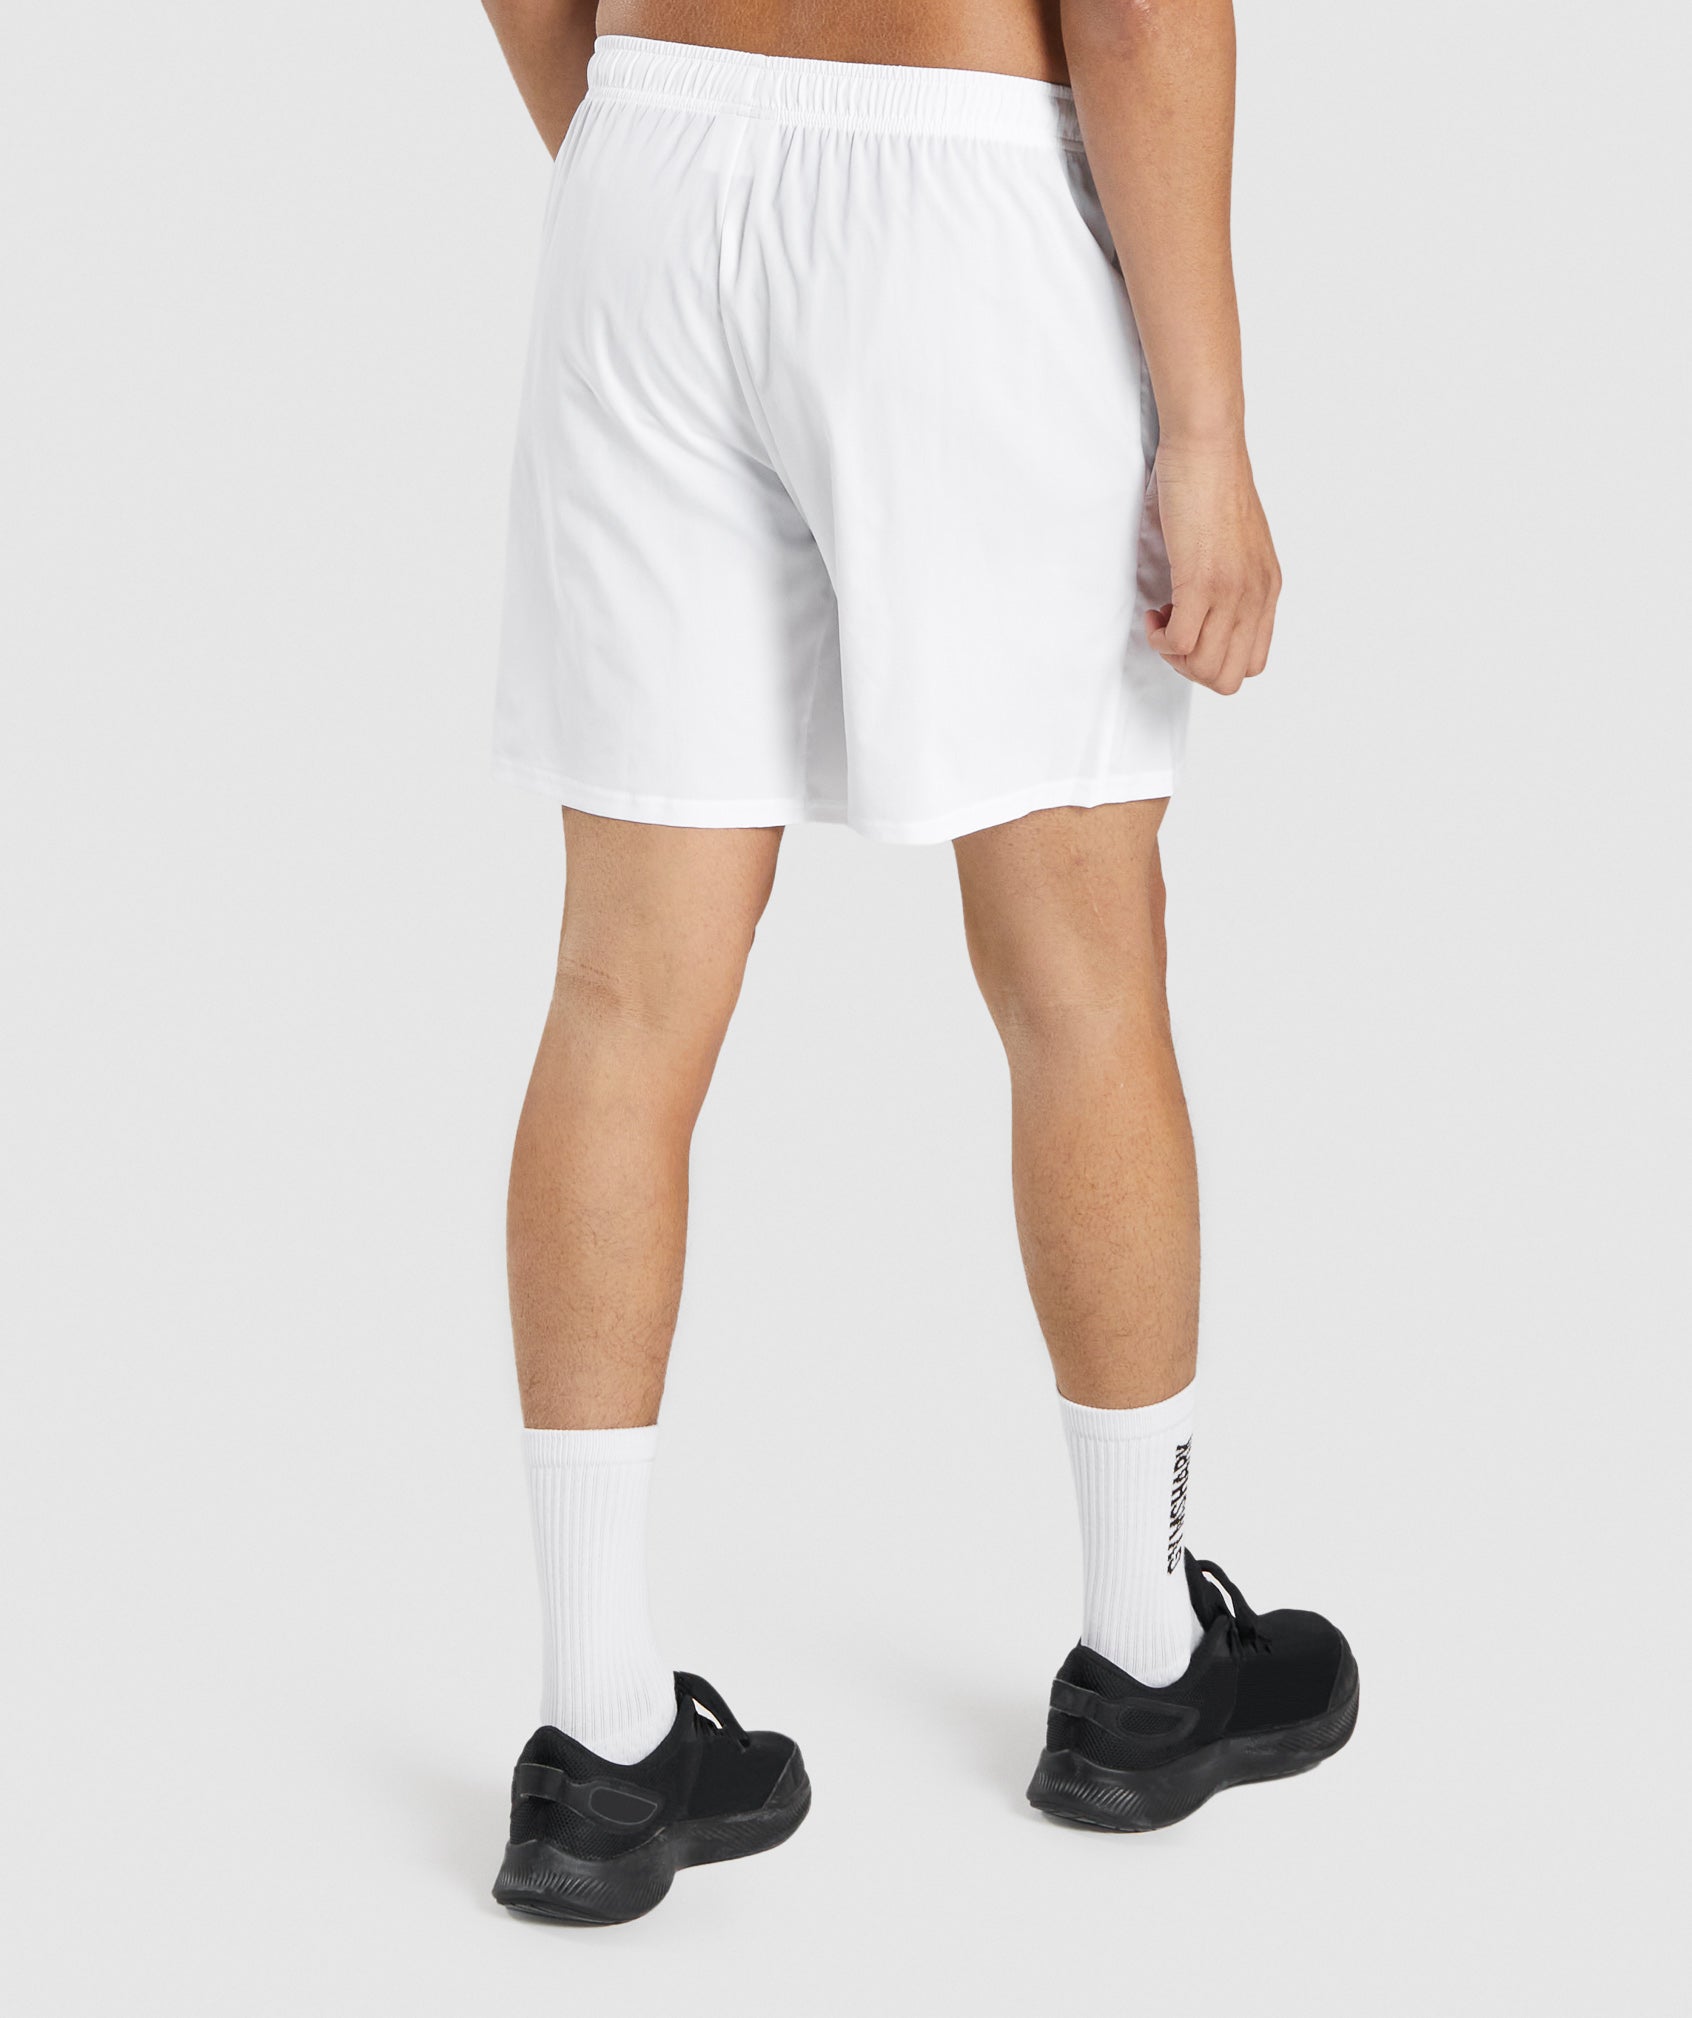 Gymshark Arrival 5 Shorts - White